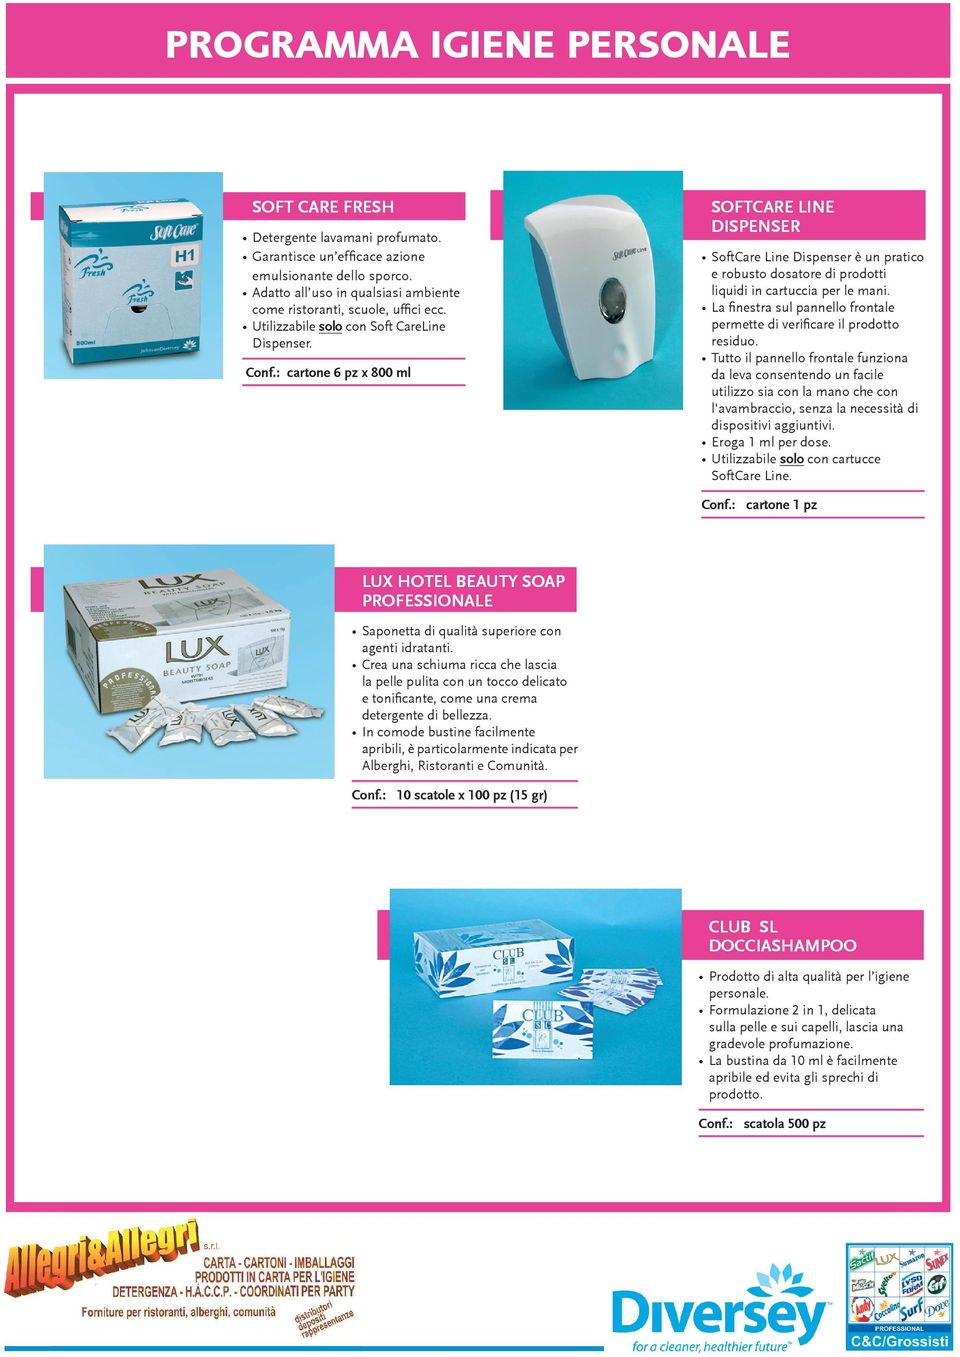 : cartone 6 pz x 800 ml SOFTCARE LINE DISPENSER SoftCare Line Dispenser è un pratico e robusto dosatore di prodotti liquidi in cartuccia per le mani.